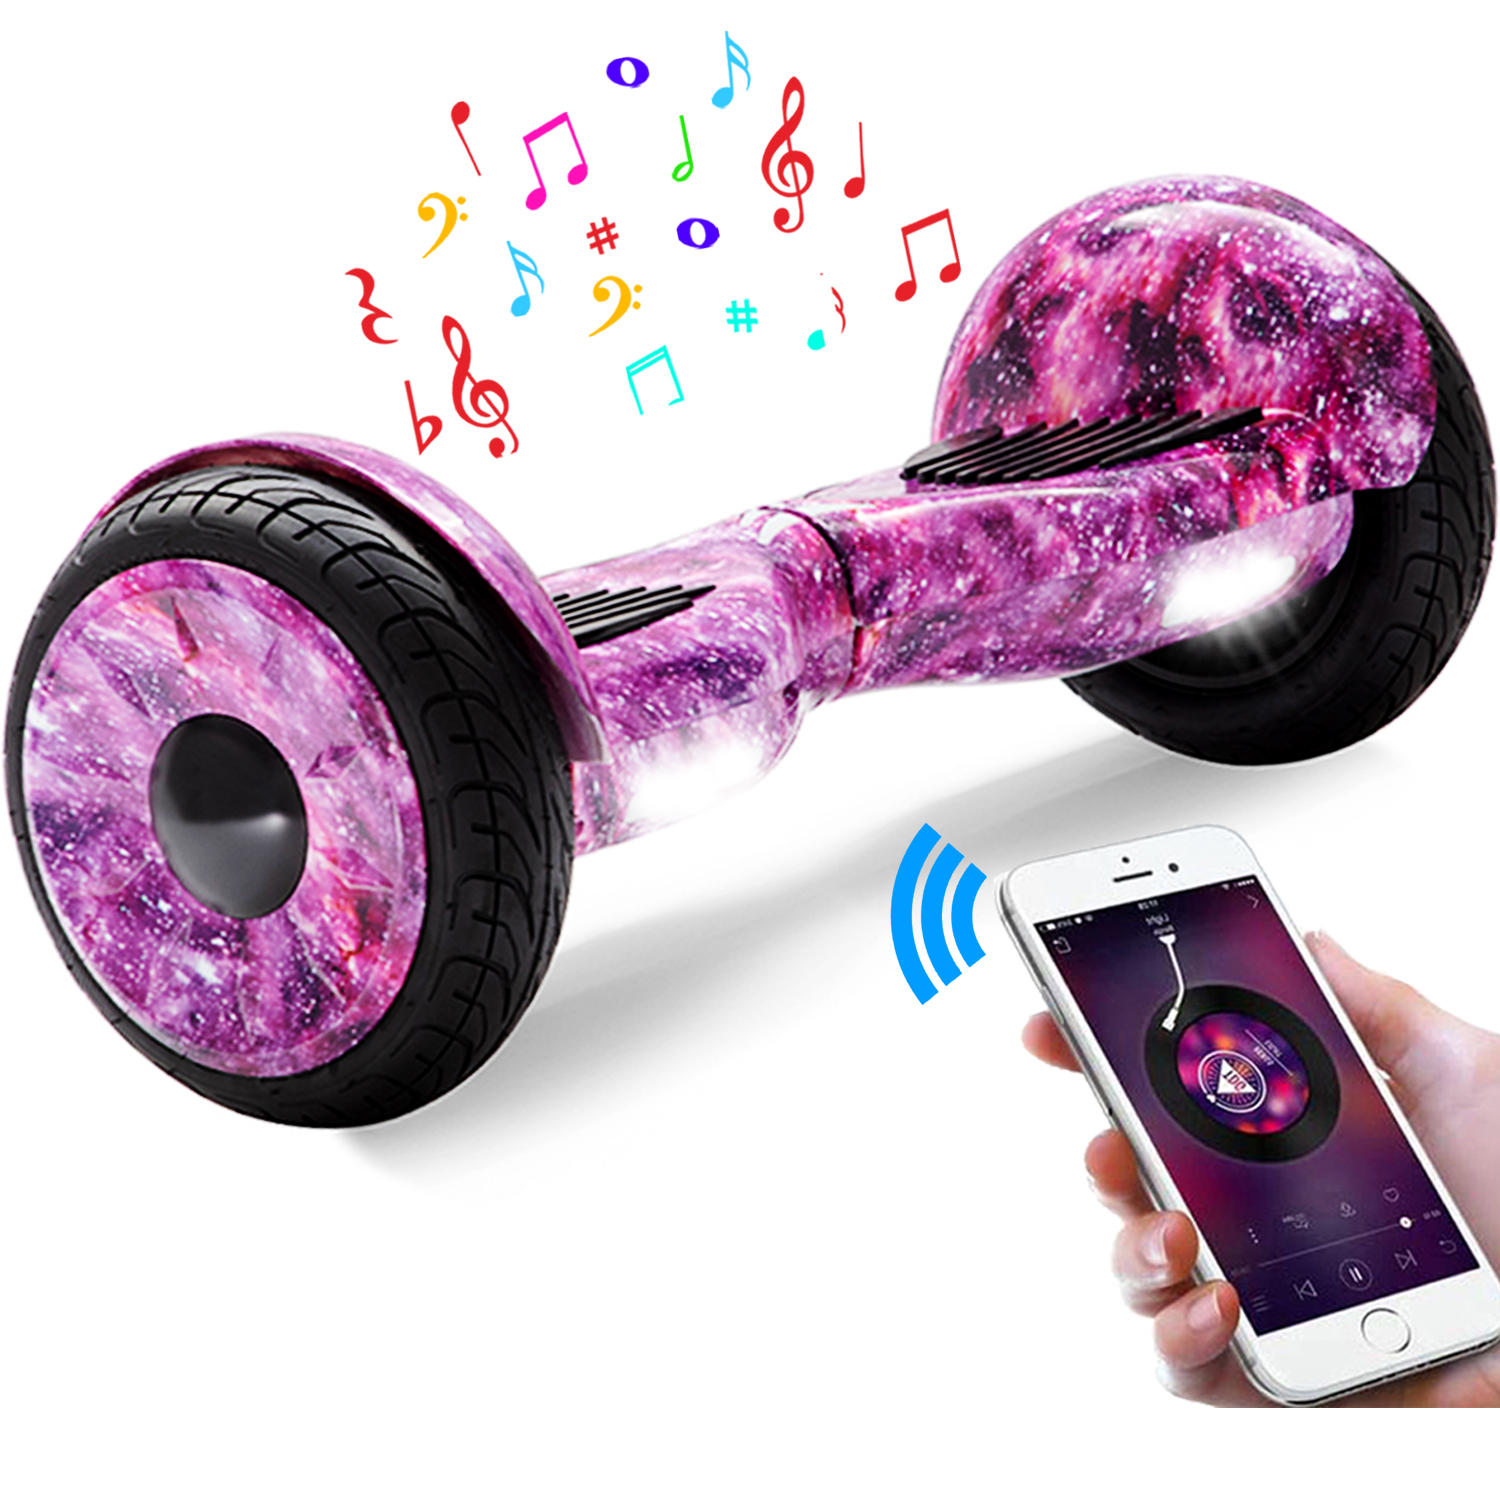 10" lila Galaxie Hoverboard mit Bluetooth, Musik Lautsprecher und Led Leuchten - 700W 15km/h